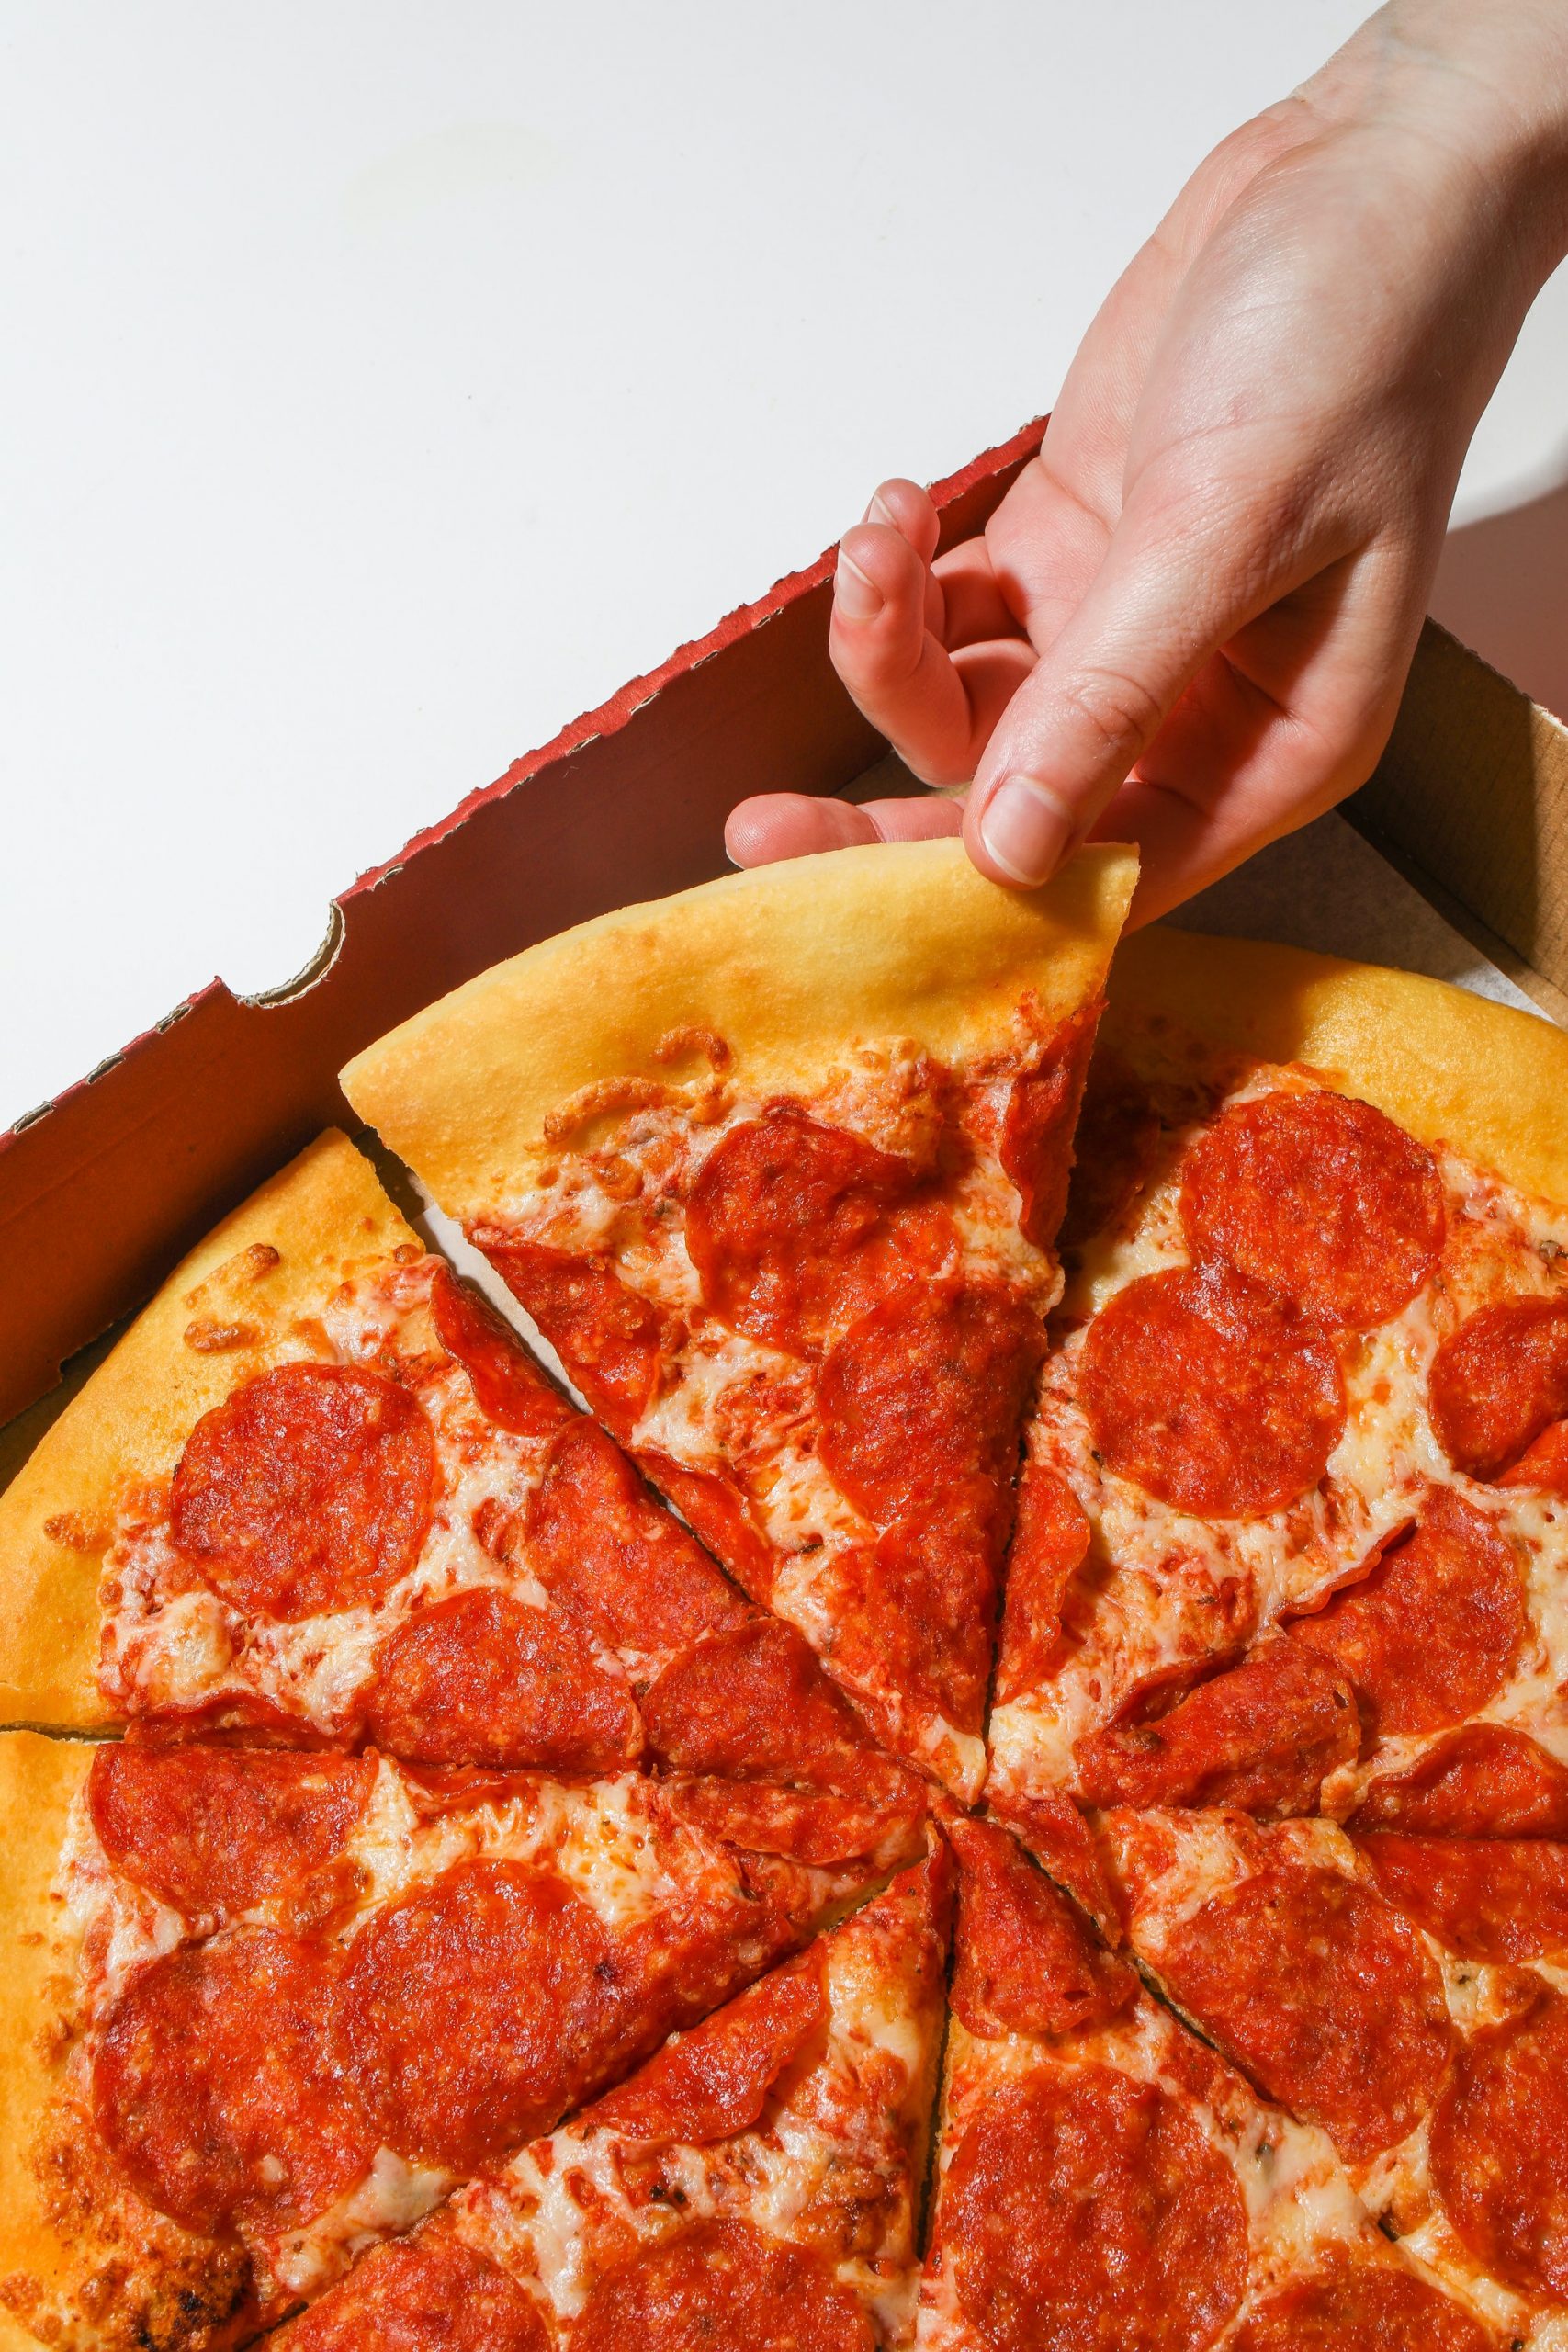 Bestaan er gezonde pizza’s?